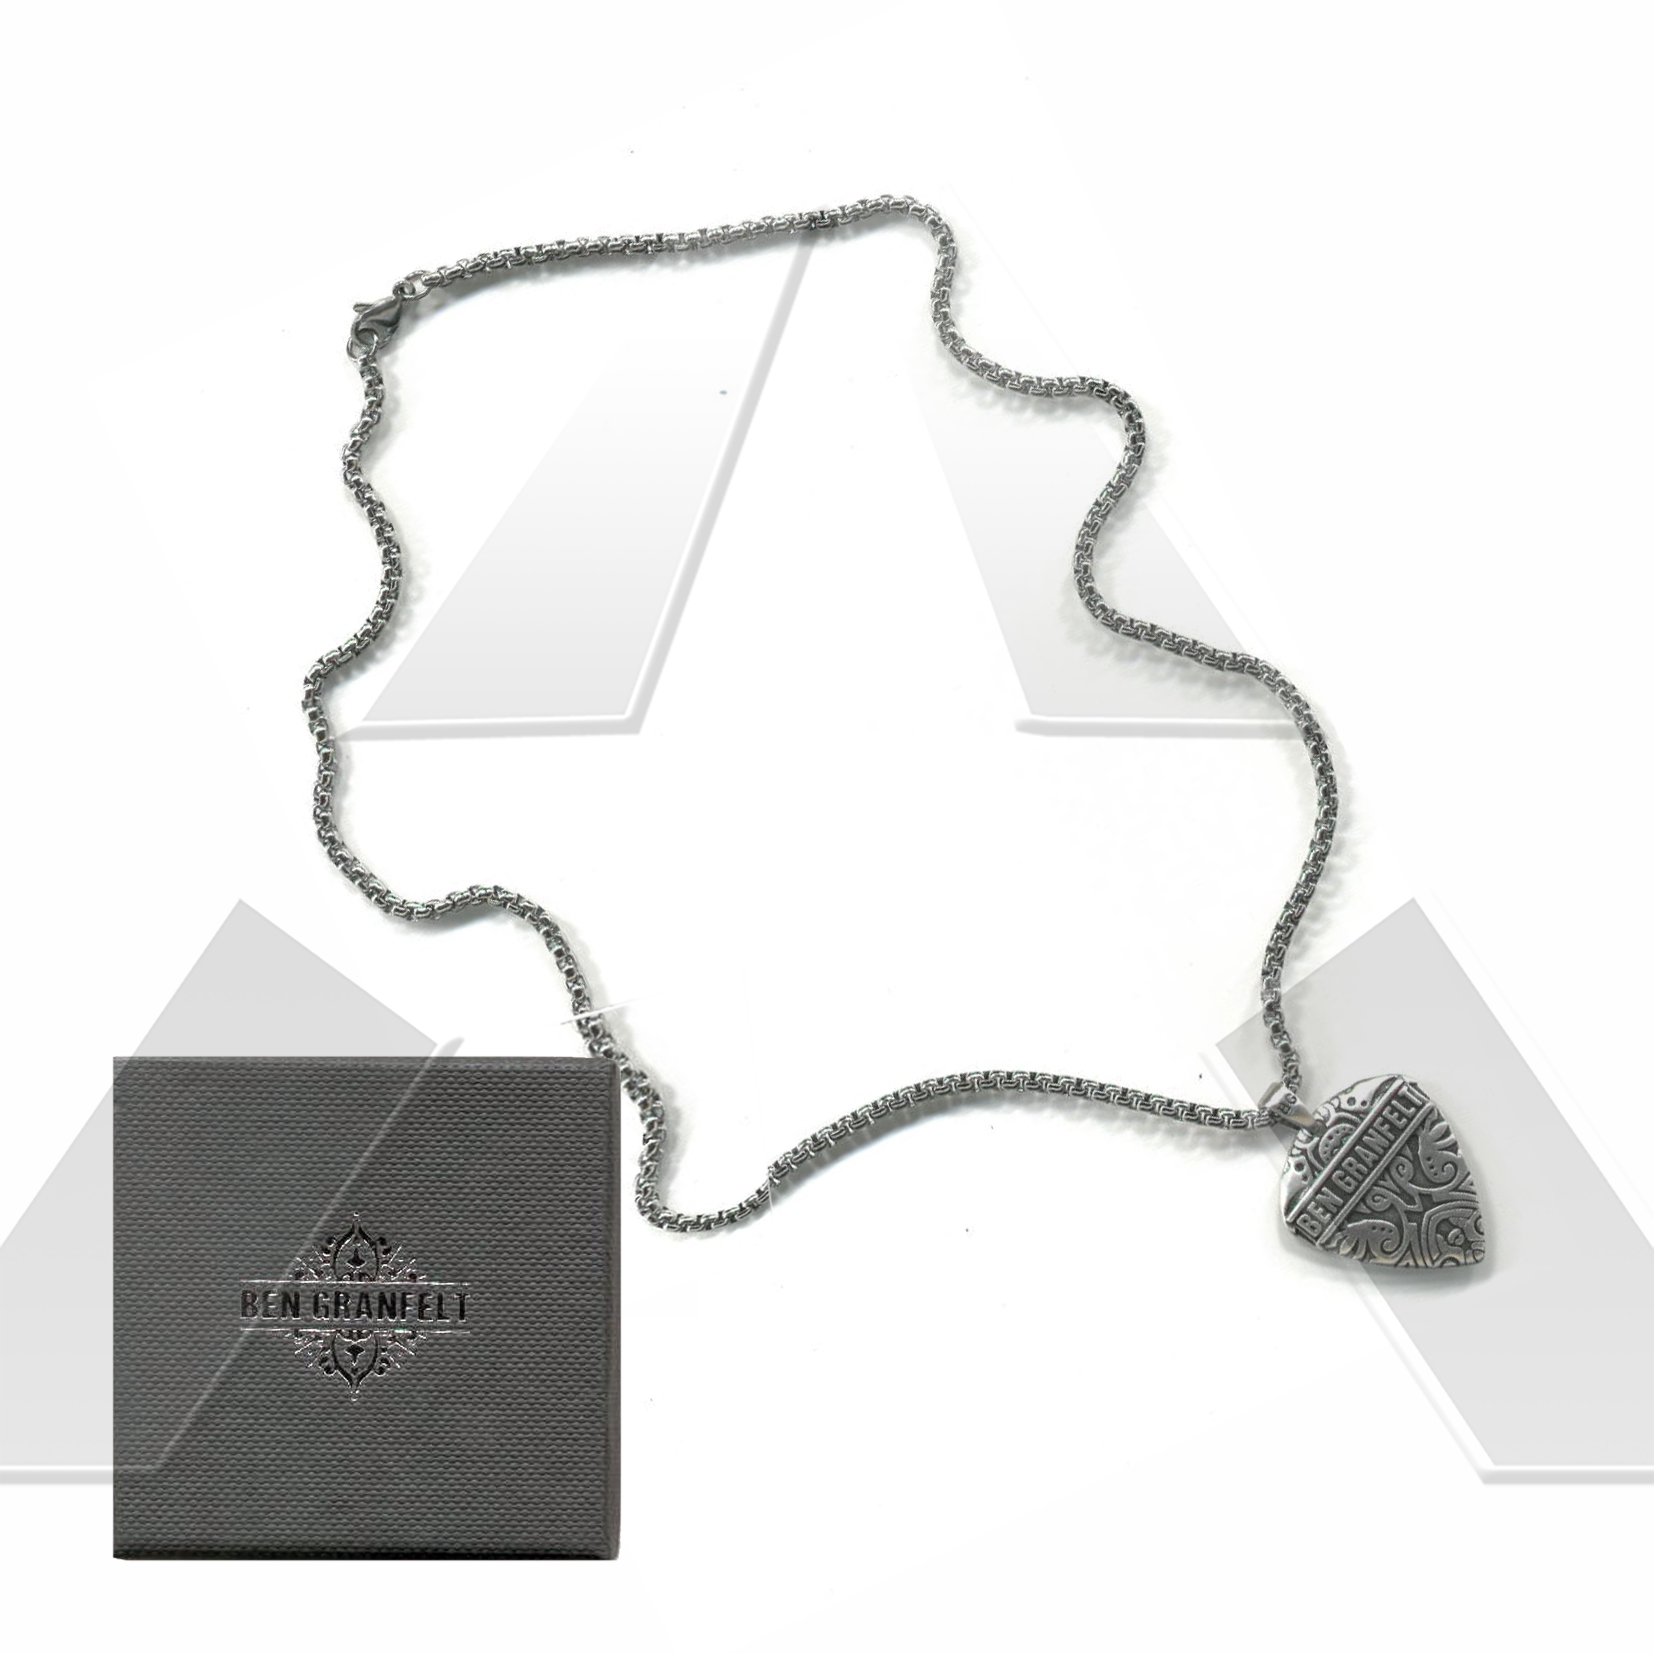 Ben Granfelt ★ Necklaces with pendant